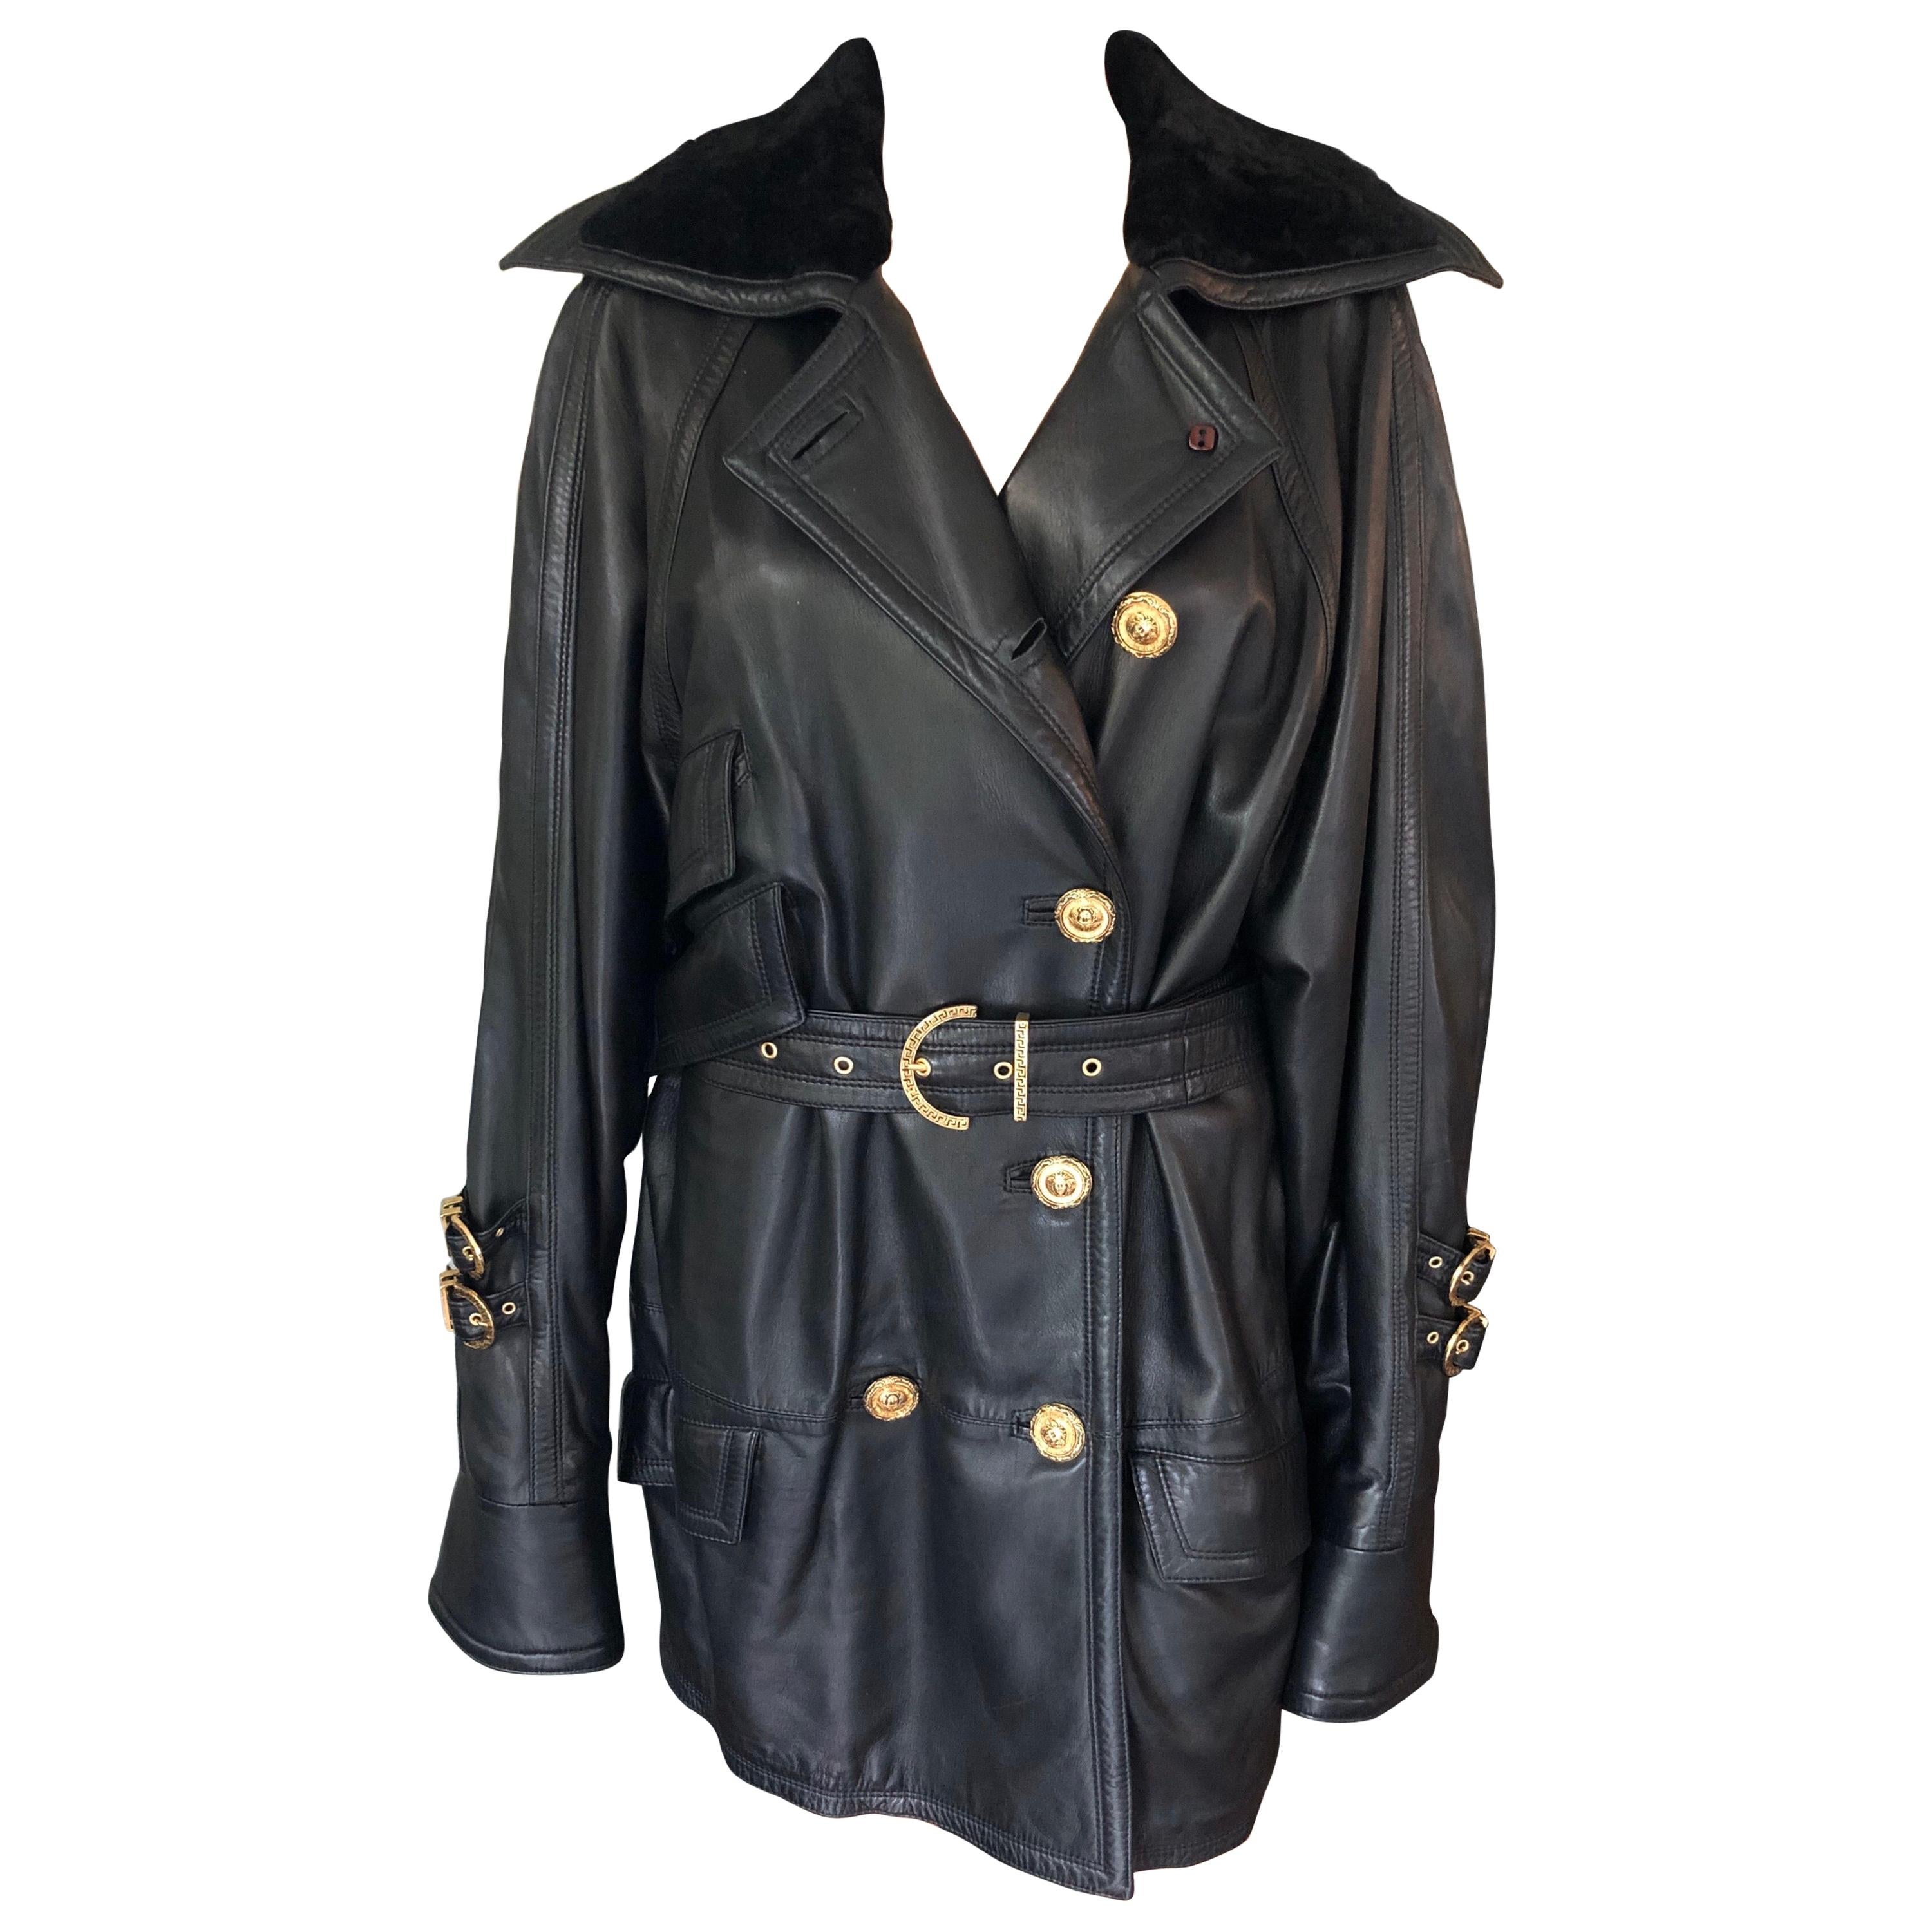 Gianni Versace c. 1990 Bondage Leather Belted Knee-Length Black Jacket Coat